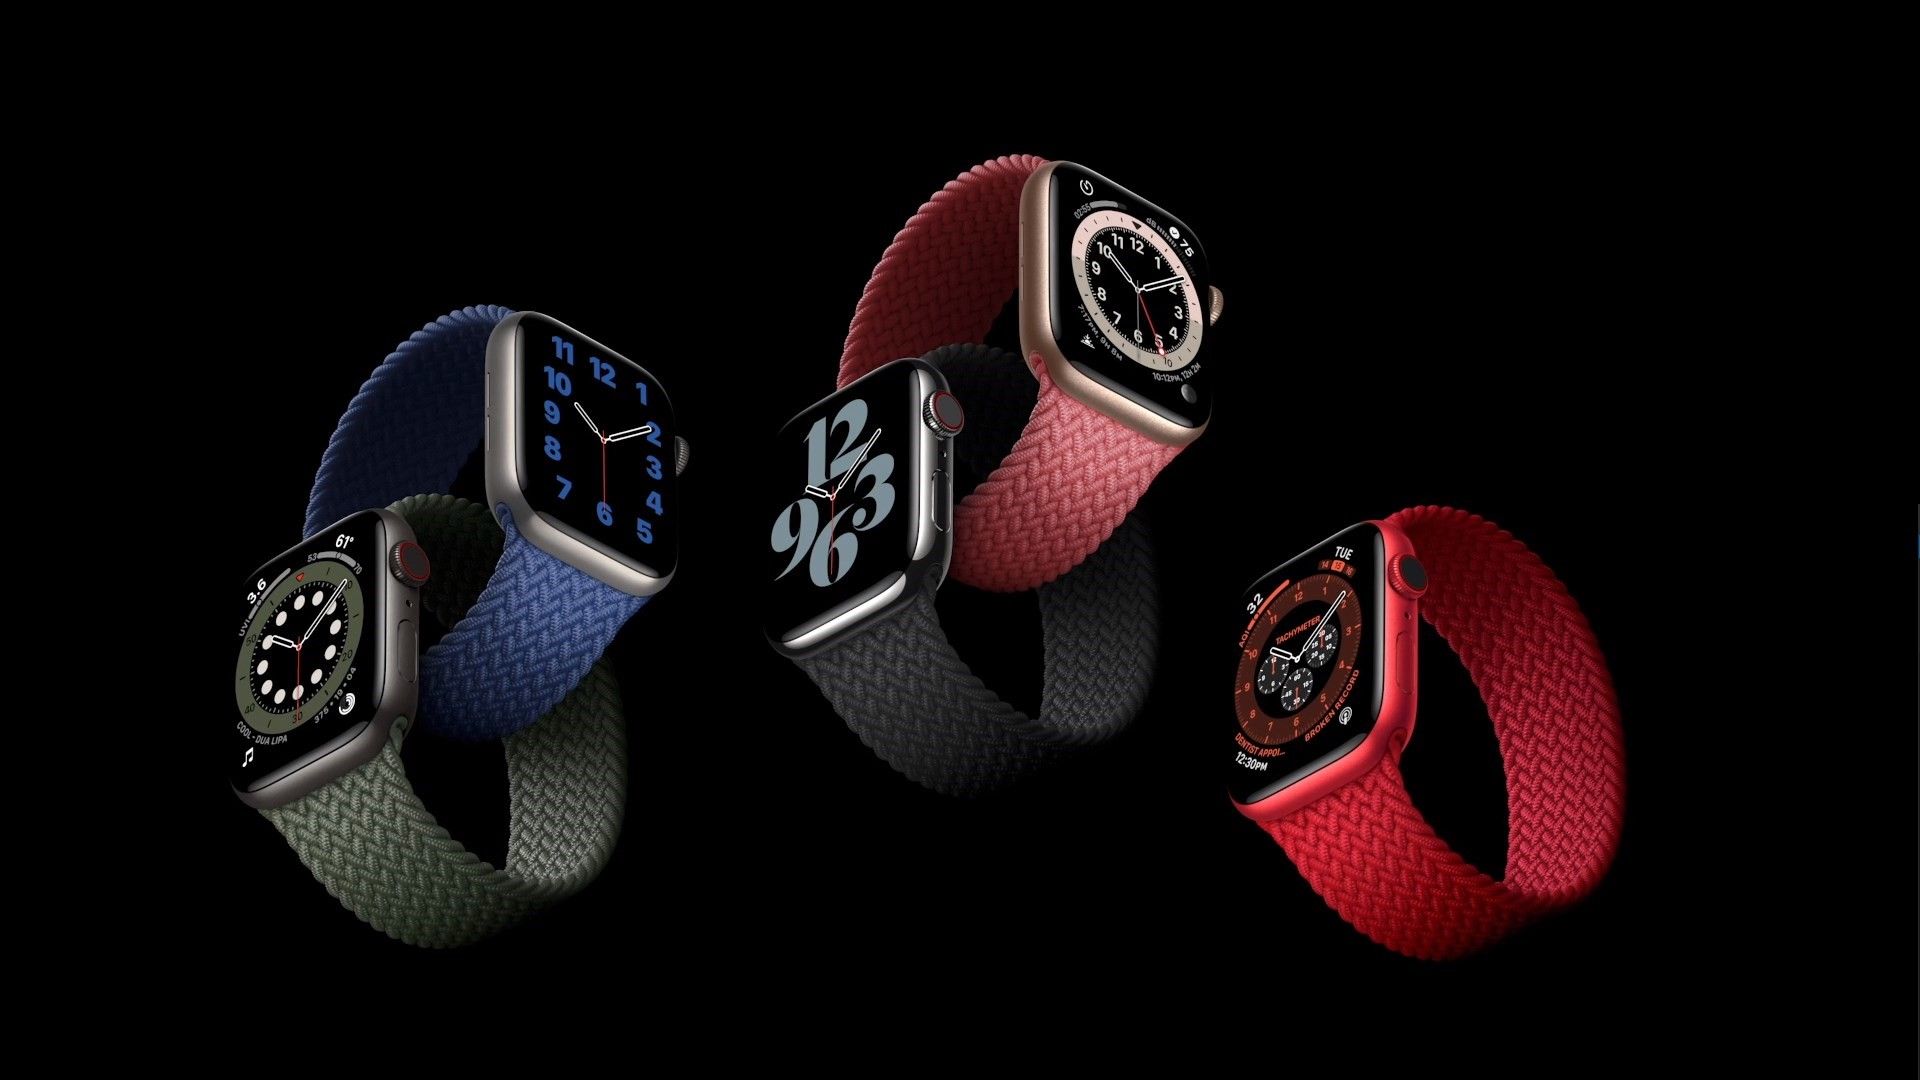 Chegou o novo Apple Watch Series 6! Conhece as novidades